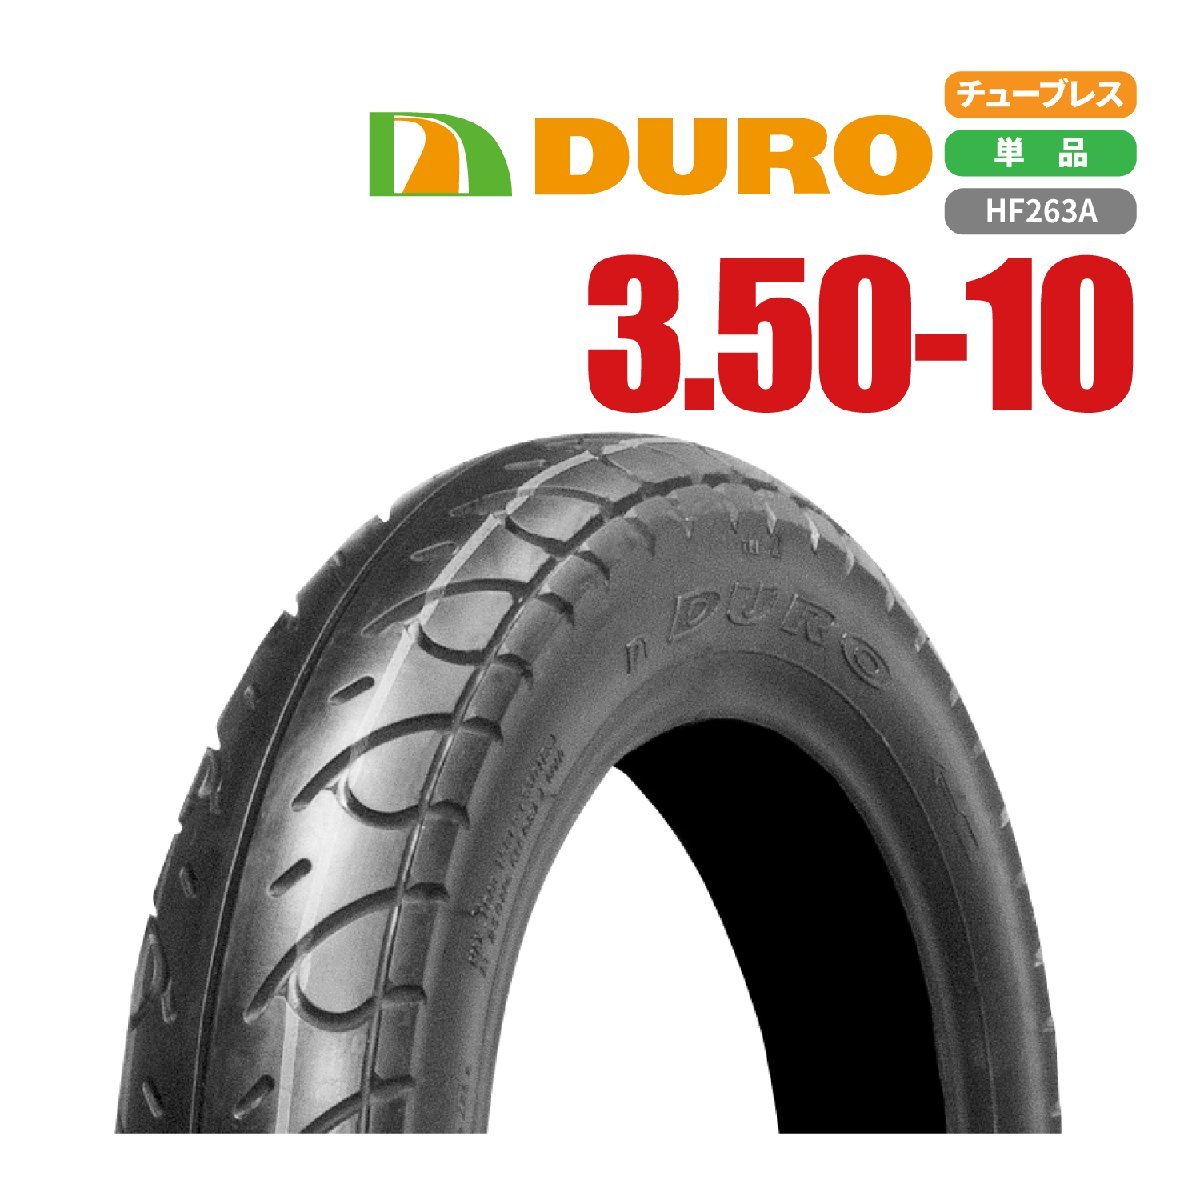 DURO 3.50-10 51J HF263A T/L スクーター タイヤ バイクパーツセンター_画像1